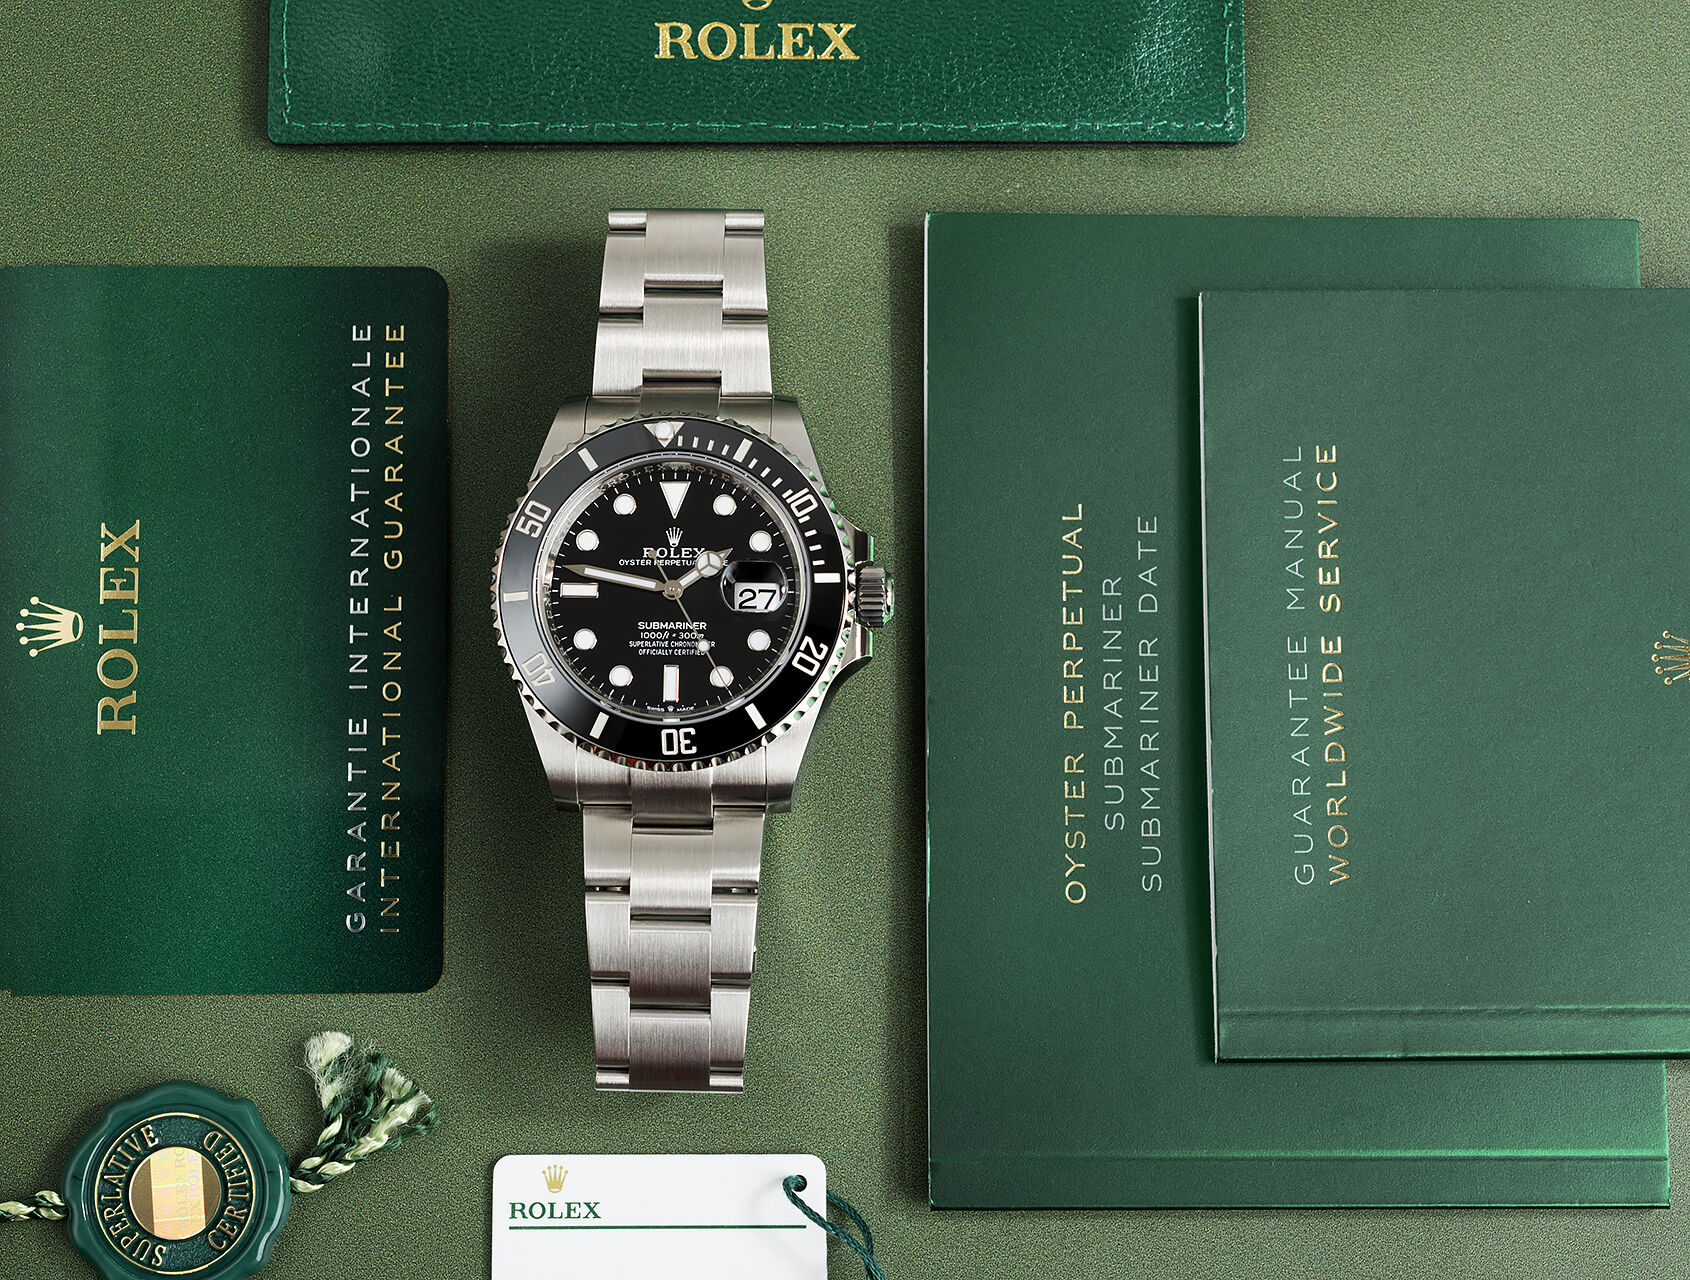 ref 126610LN | 126610LN - Brand New | Rolex Submariner Date